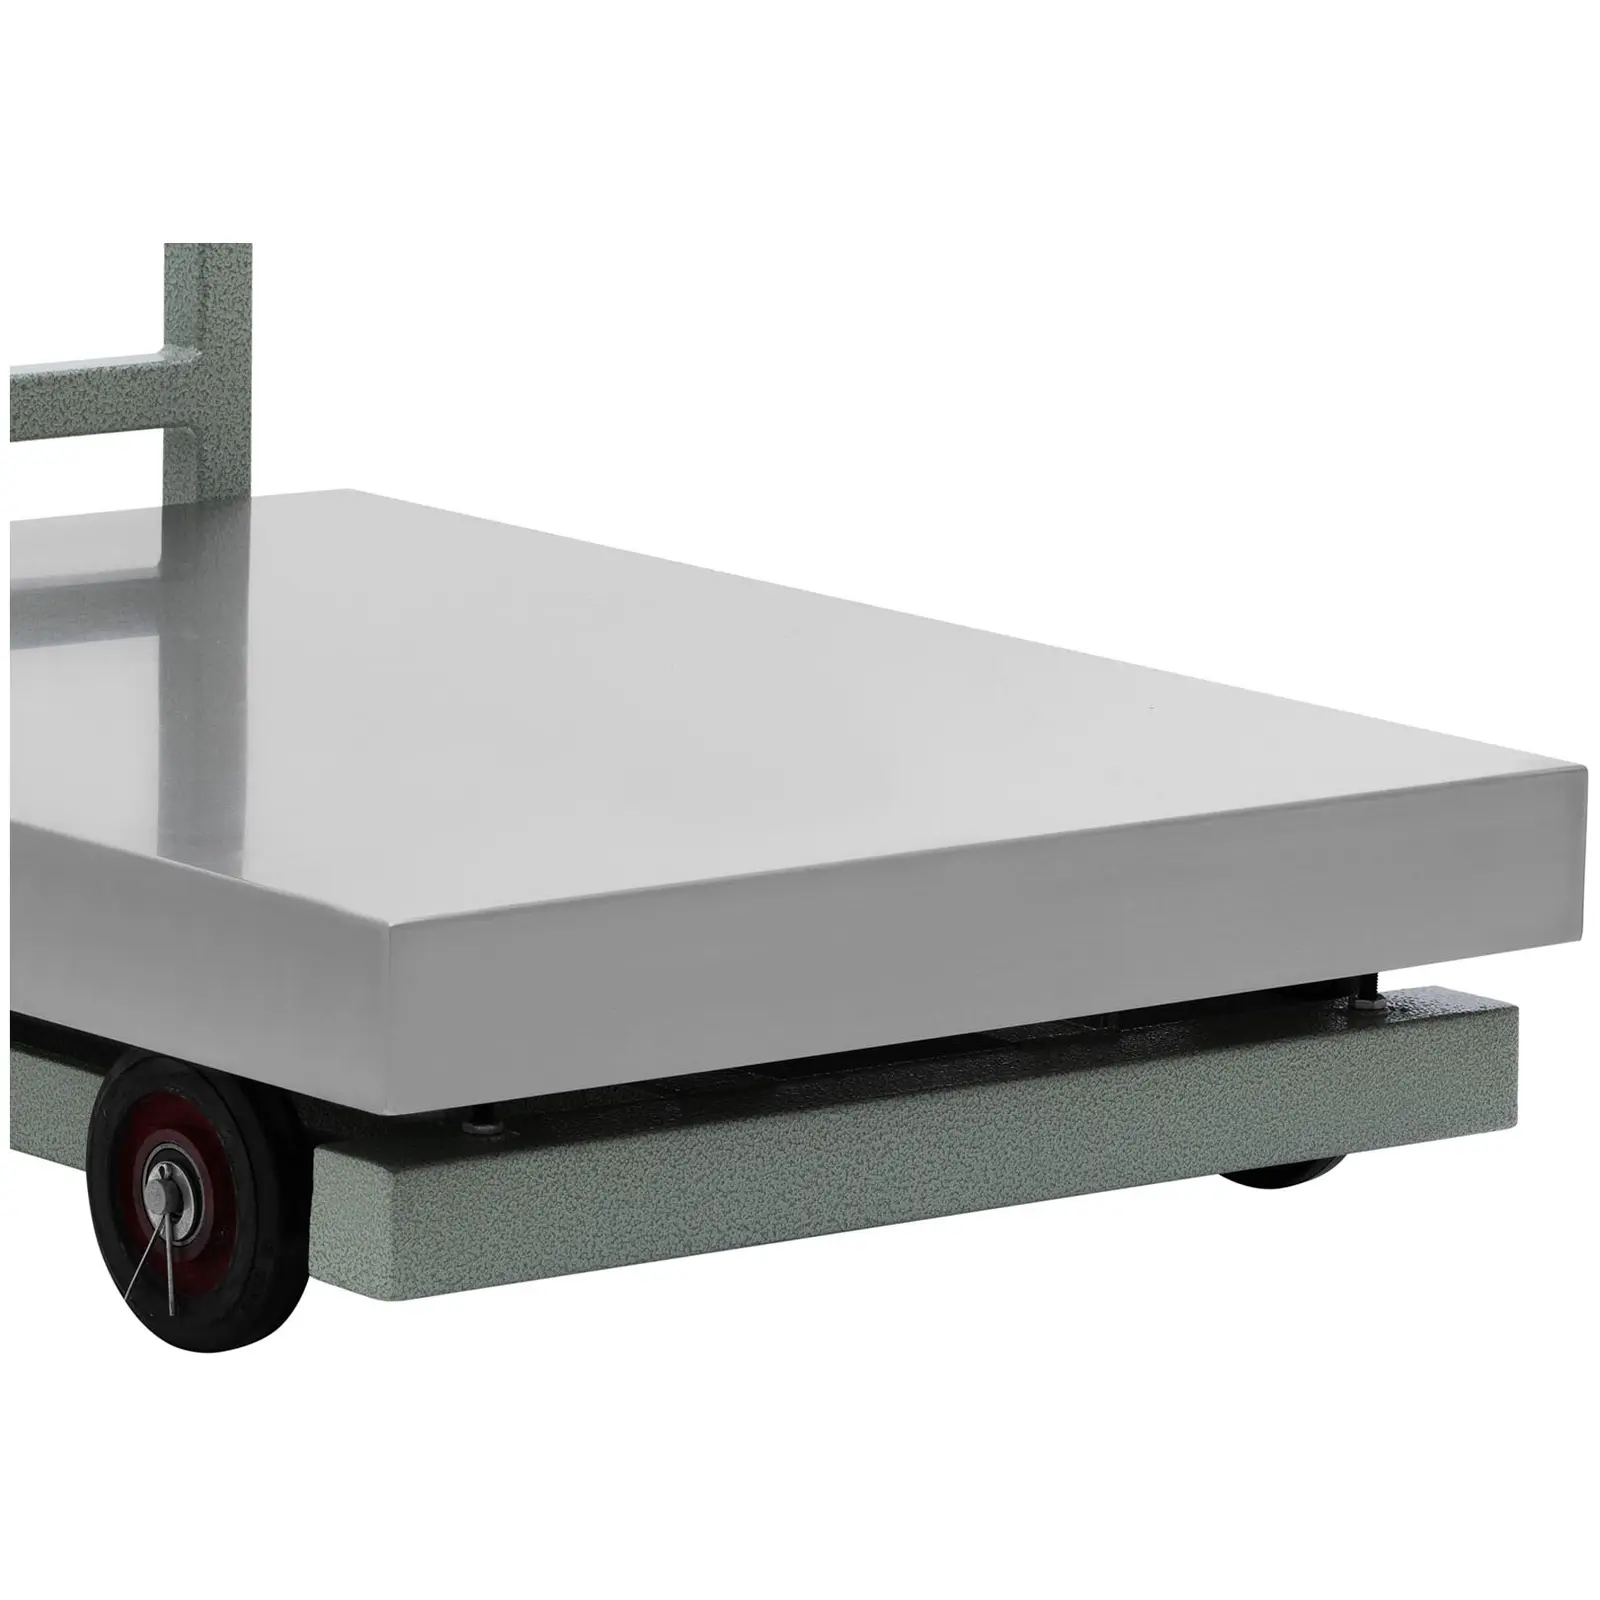 Produtos recondicionados Balança de plataforma - rodas - 1000 kg / 0,2 kg - 600 x 800 x 195 mm - kg/lb